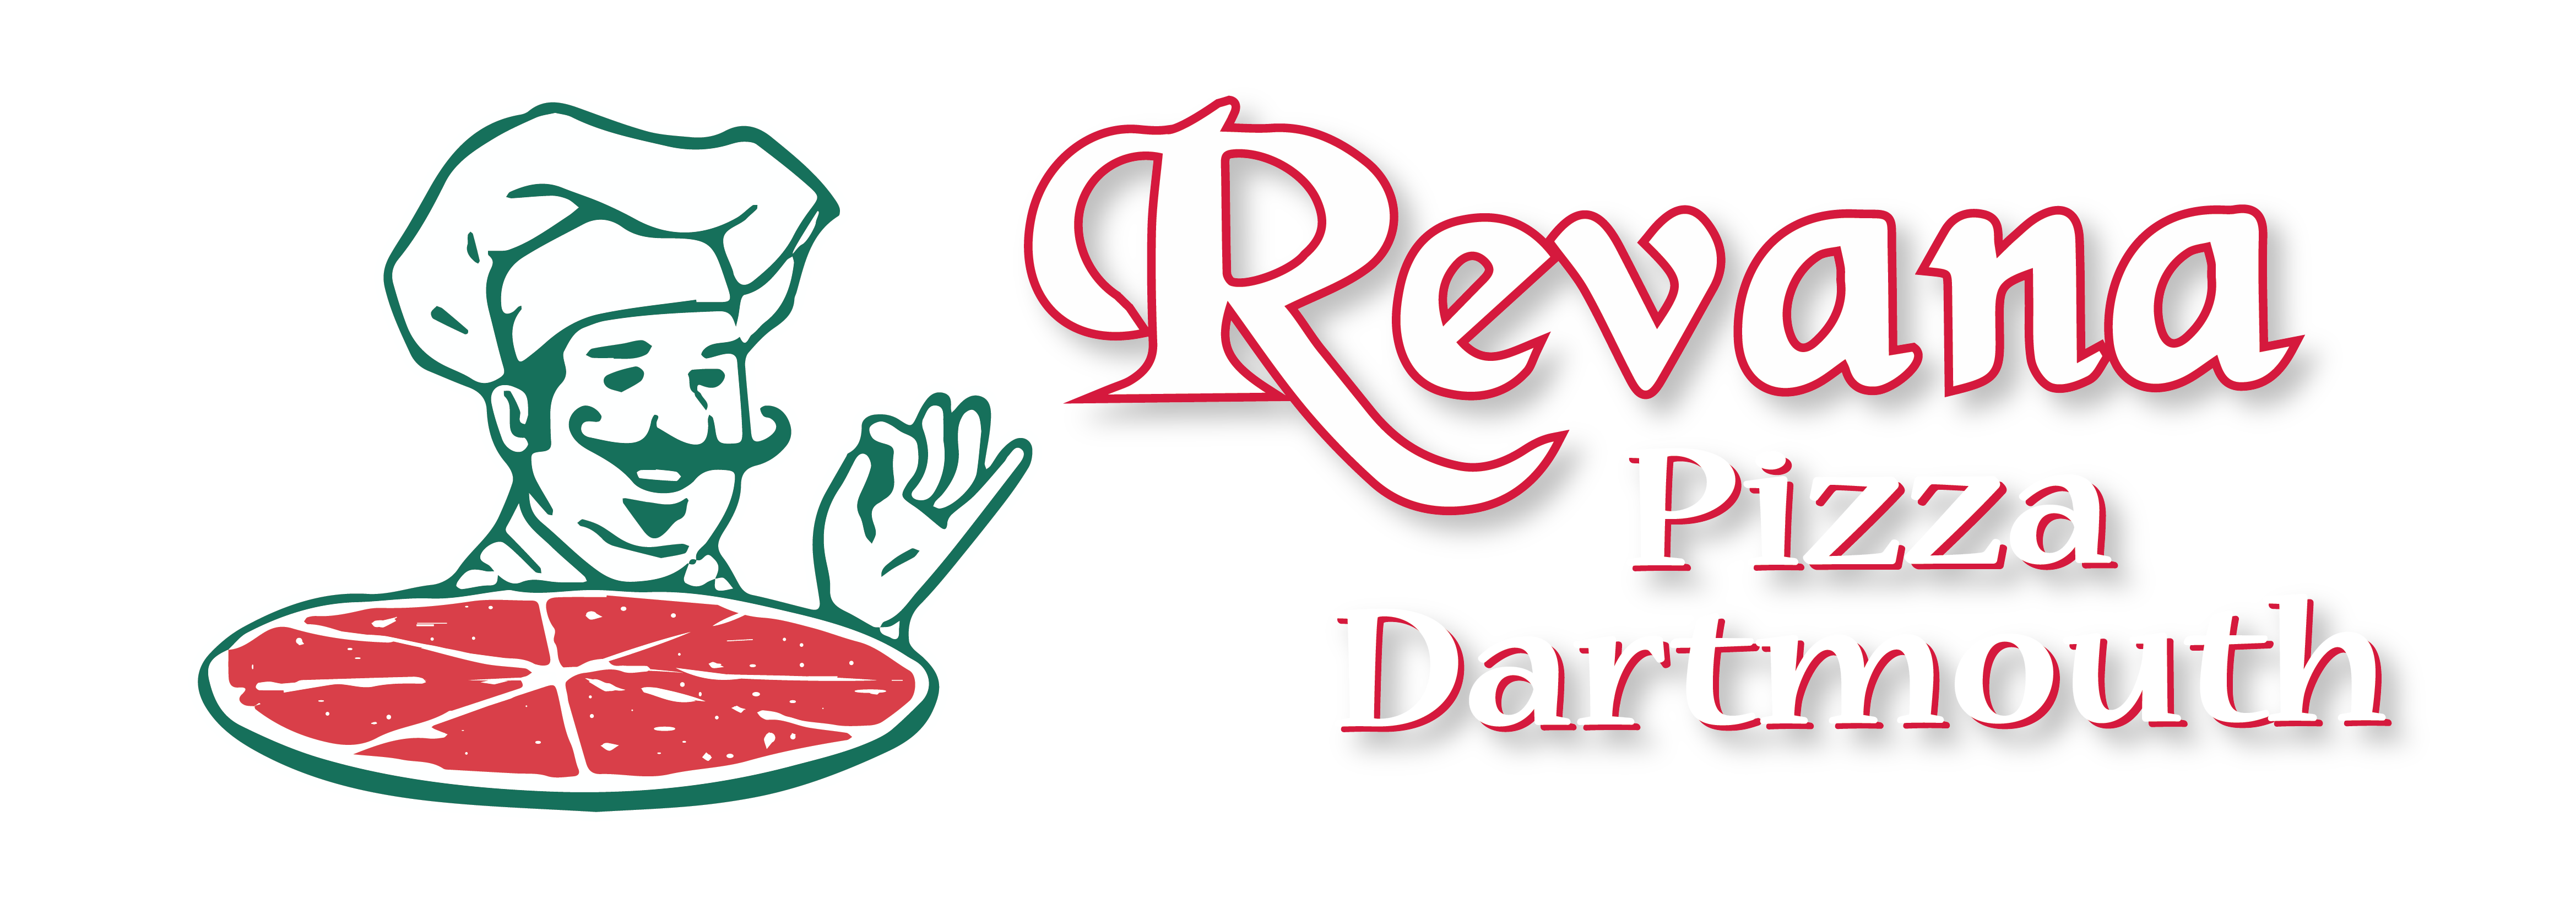 Revana Pizza Dartmouth